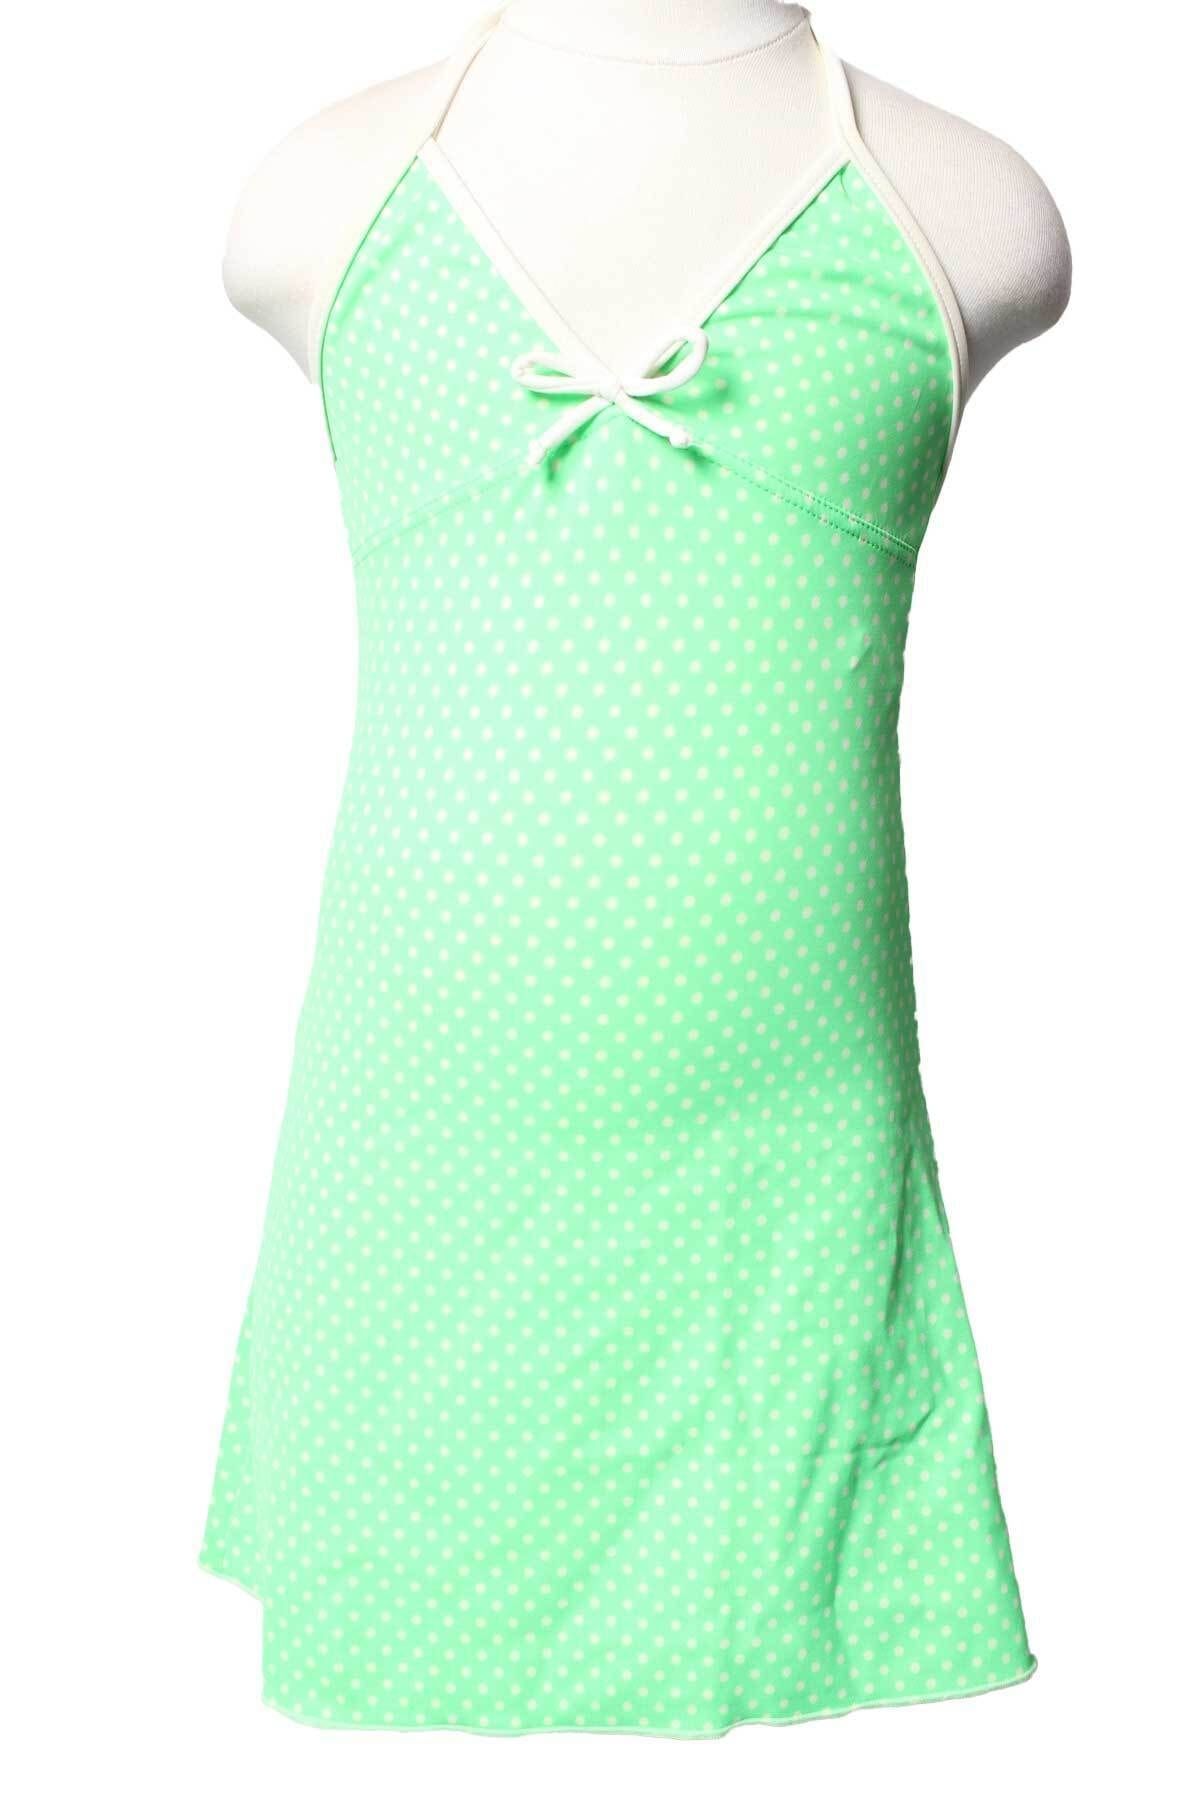 Sude Ayl Kız Çocuk Yeşil Renk Puantiyeli Fiyonk Detaylı Boyundan Bağlamalı Deniz Elbisesi 144-107